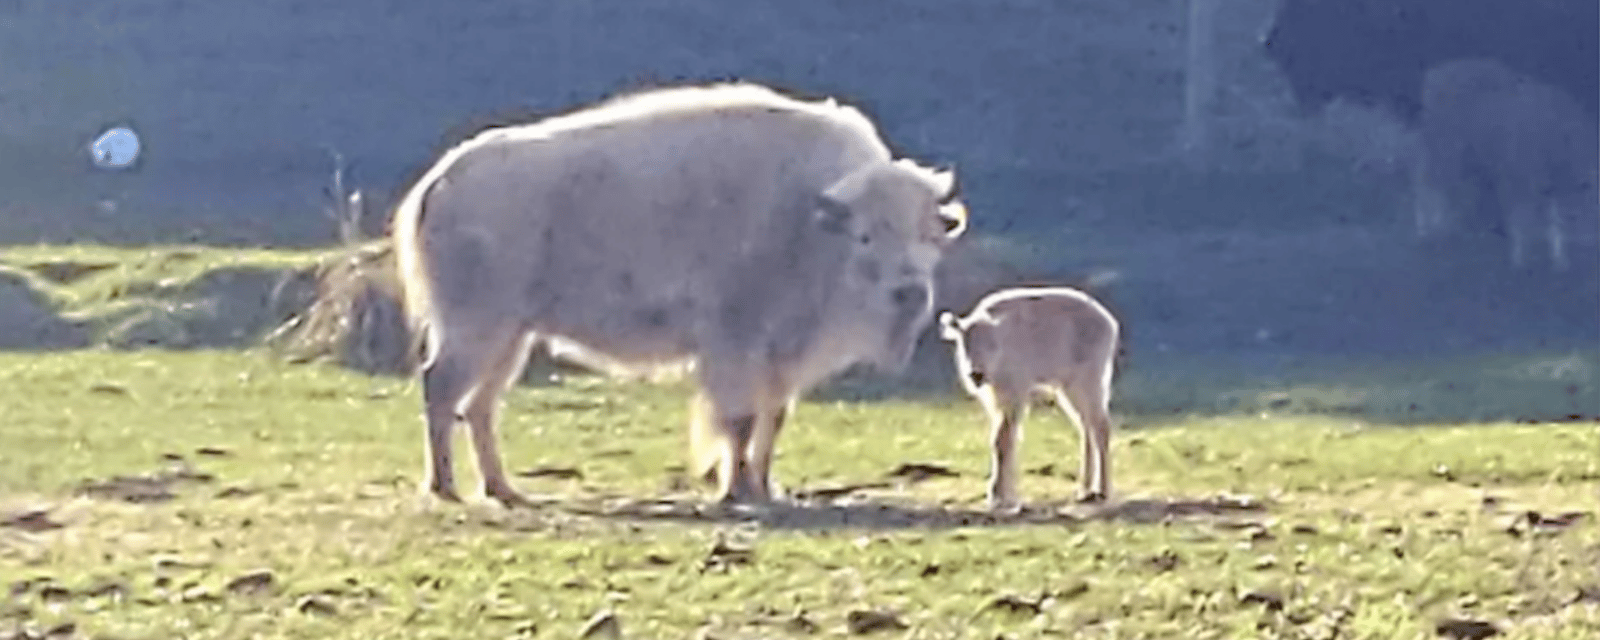 Un rare bison blanc est né dans un parc naturel